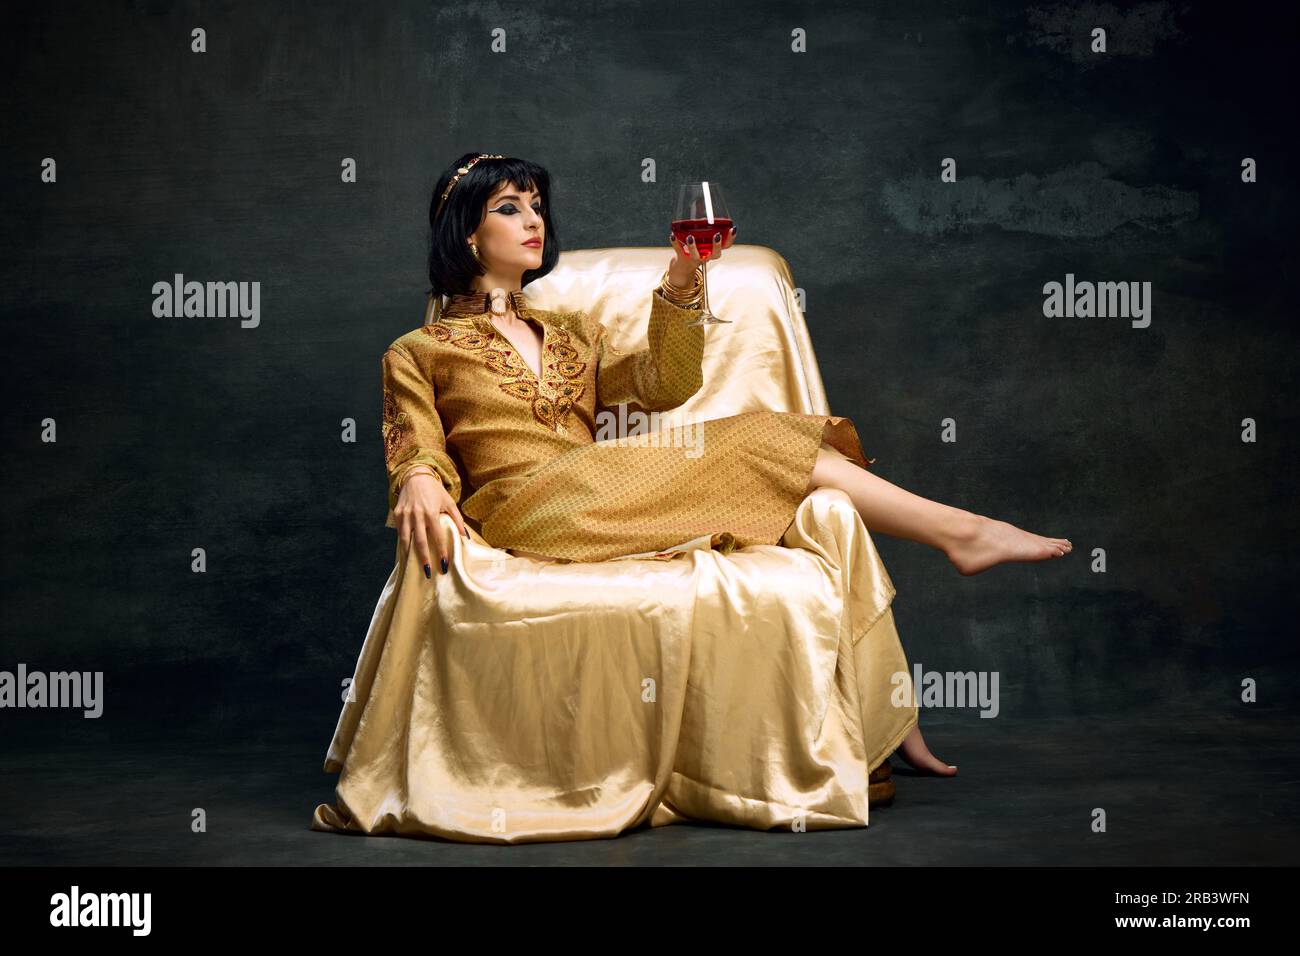 Portrait de noble, belle femme yougn en imag de reine, Cléopâtre, en robe goden assis et buvant du vin rouge sur fond vintage foncé Banque D'Images